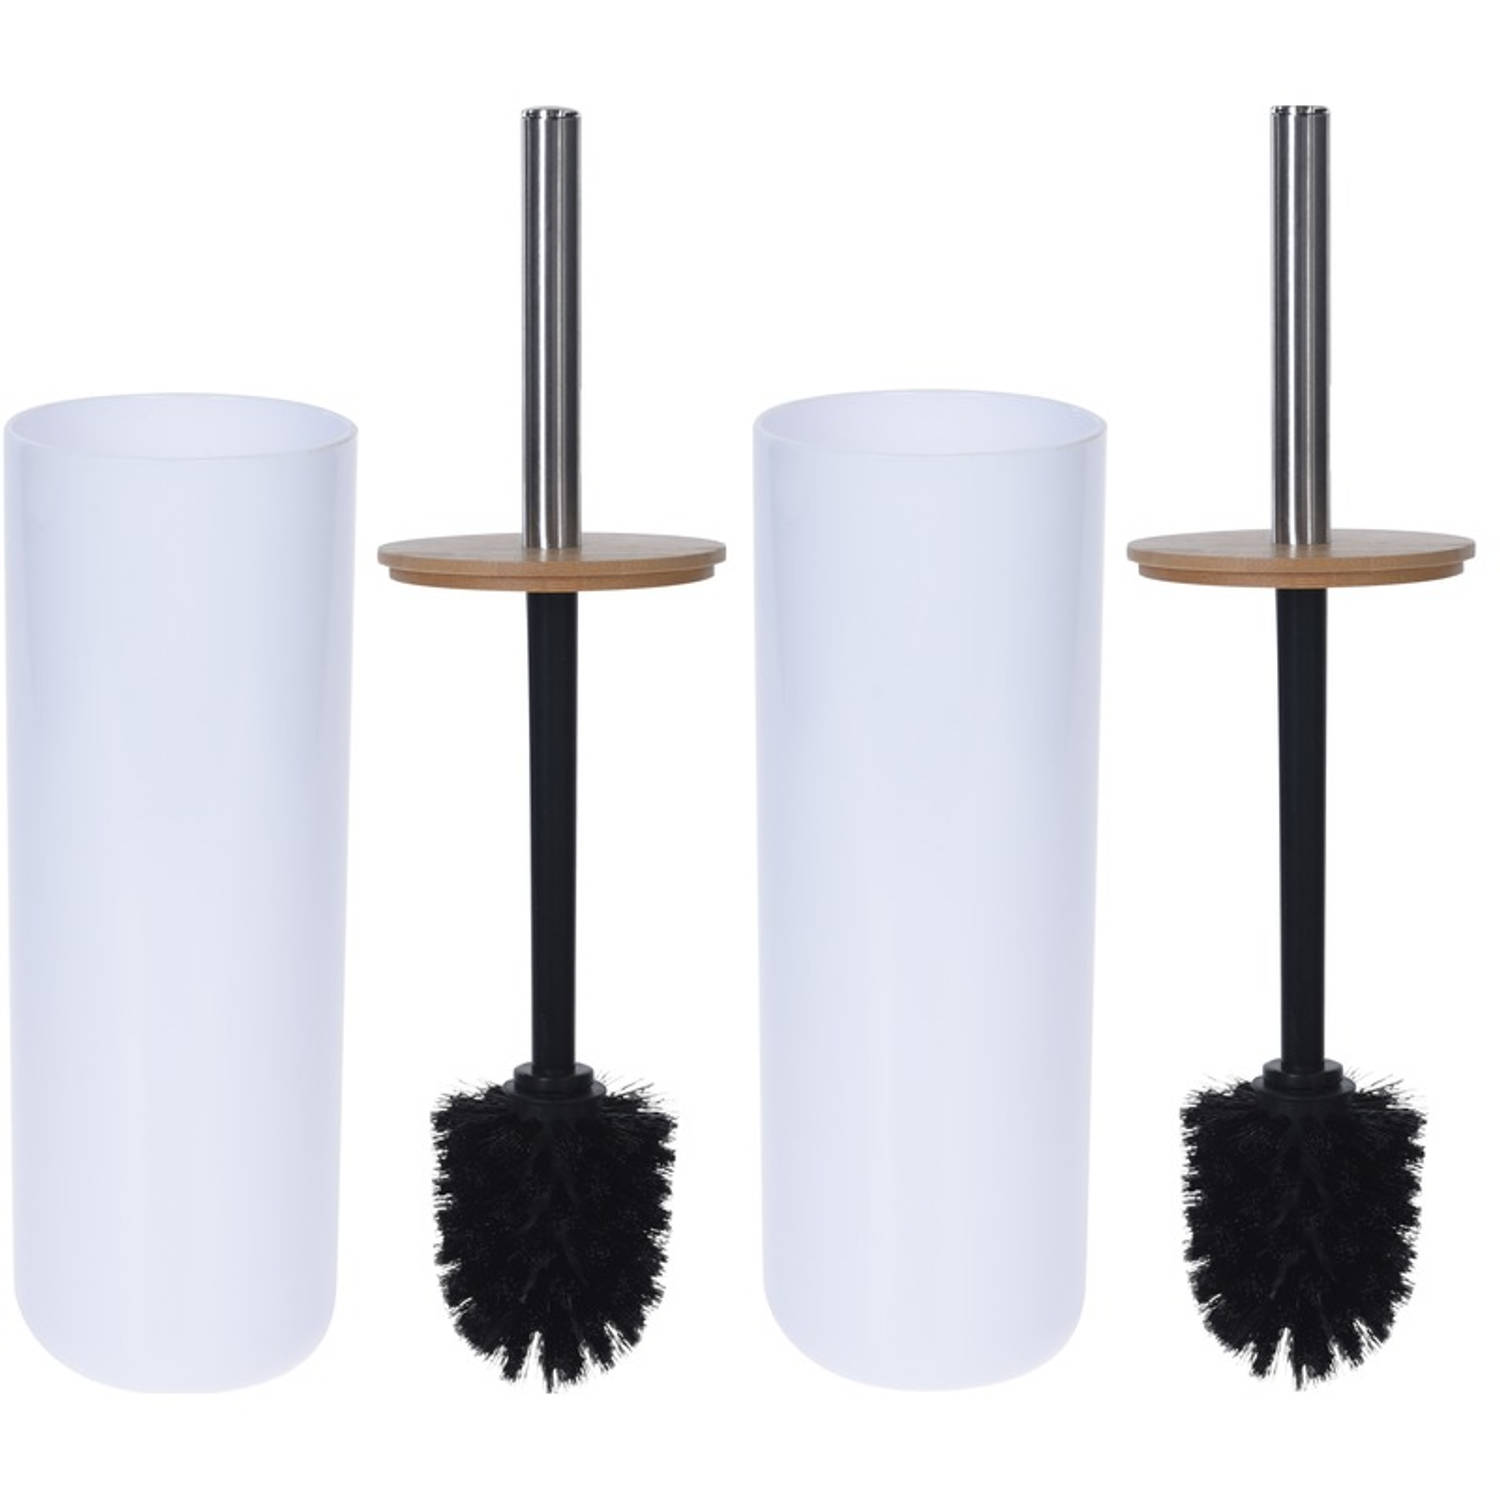 2x Witte toiletborstel houders met bamboe 26 cm Badkamer-toiletaccessoires Wc-borstel houders